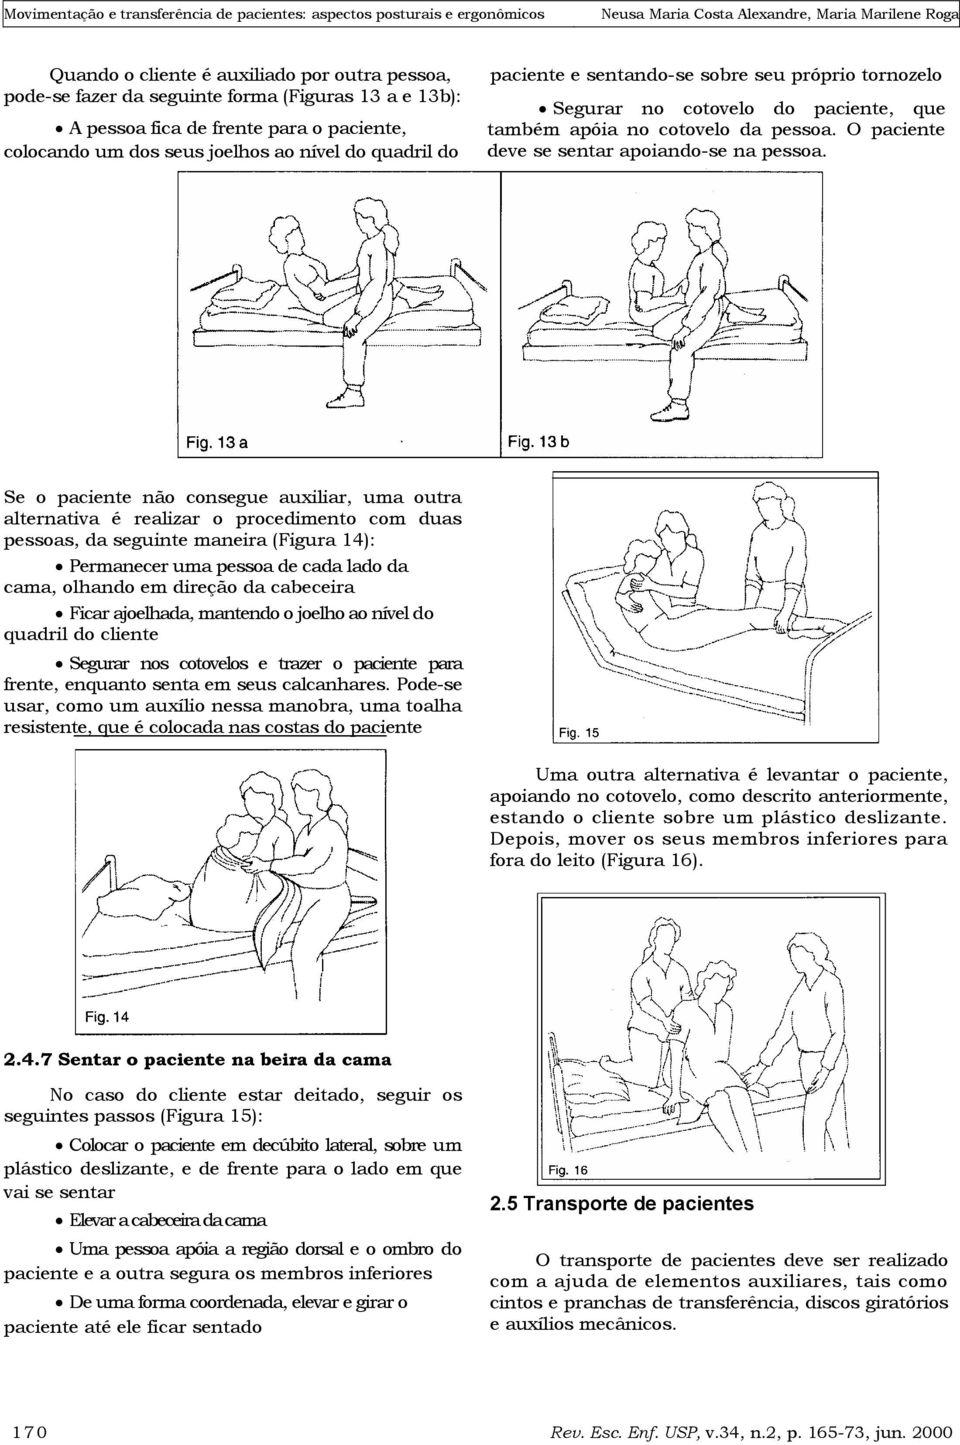 Se o paciente não consegue auxiliar, uma outra alternativa é realizar o procedimento com duas pessoas, da seguinte maneira (Figura 14): Permanecer uma pessoa de cada lado da cama, olhando em direção